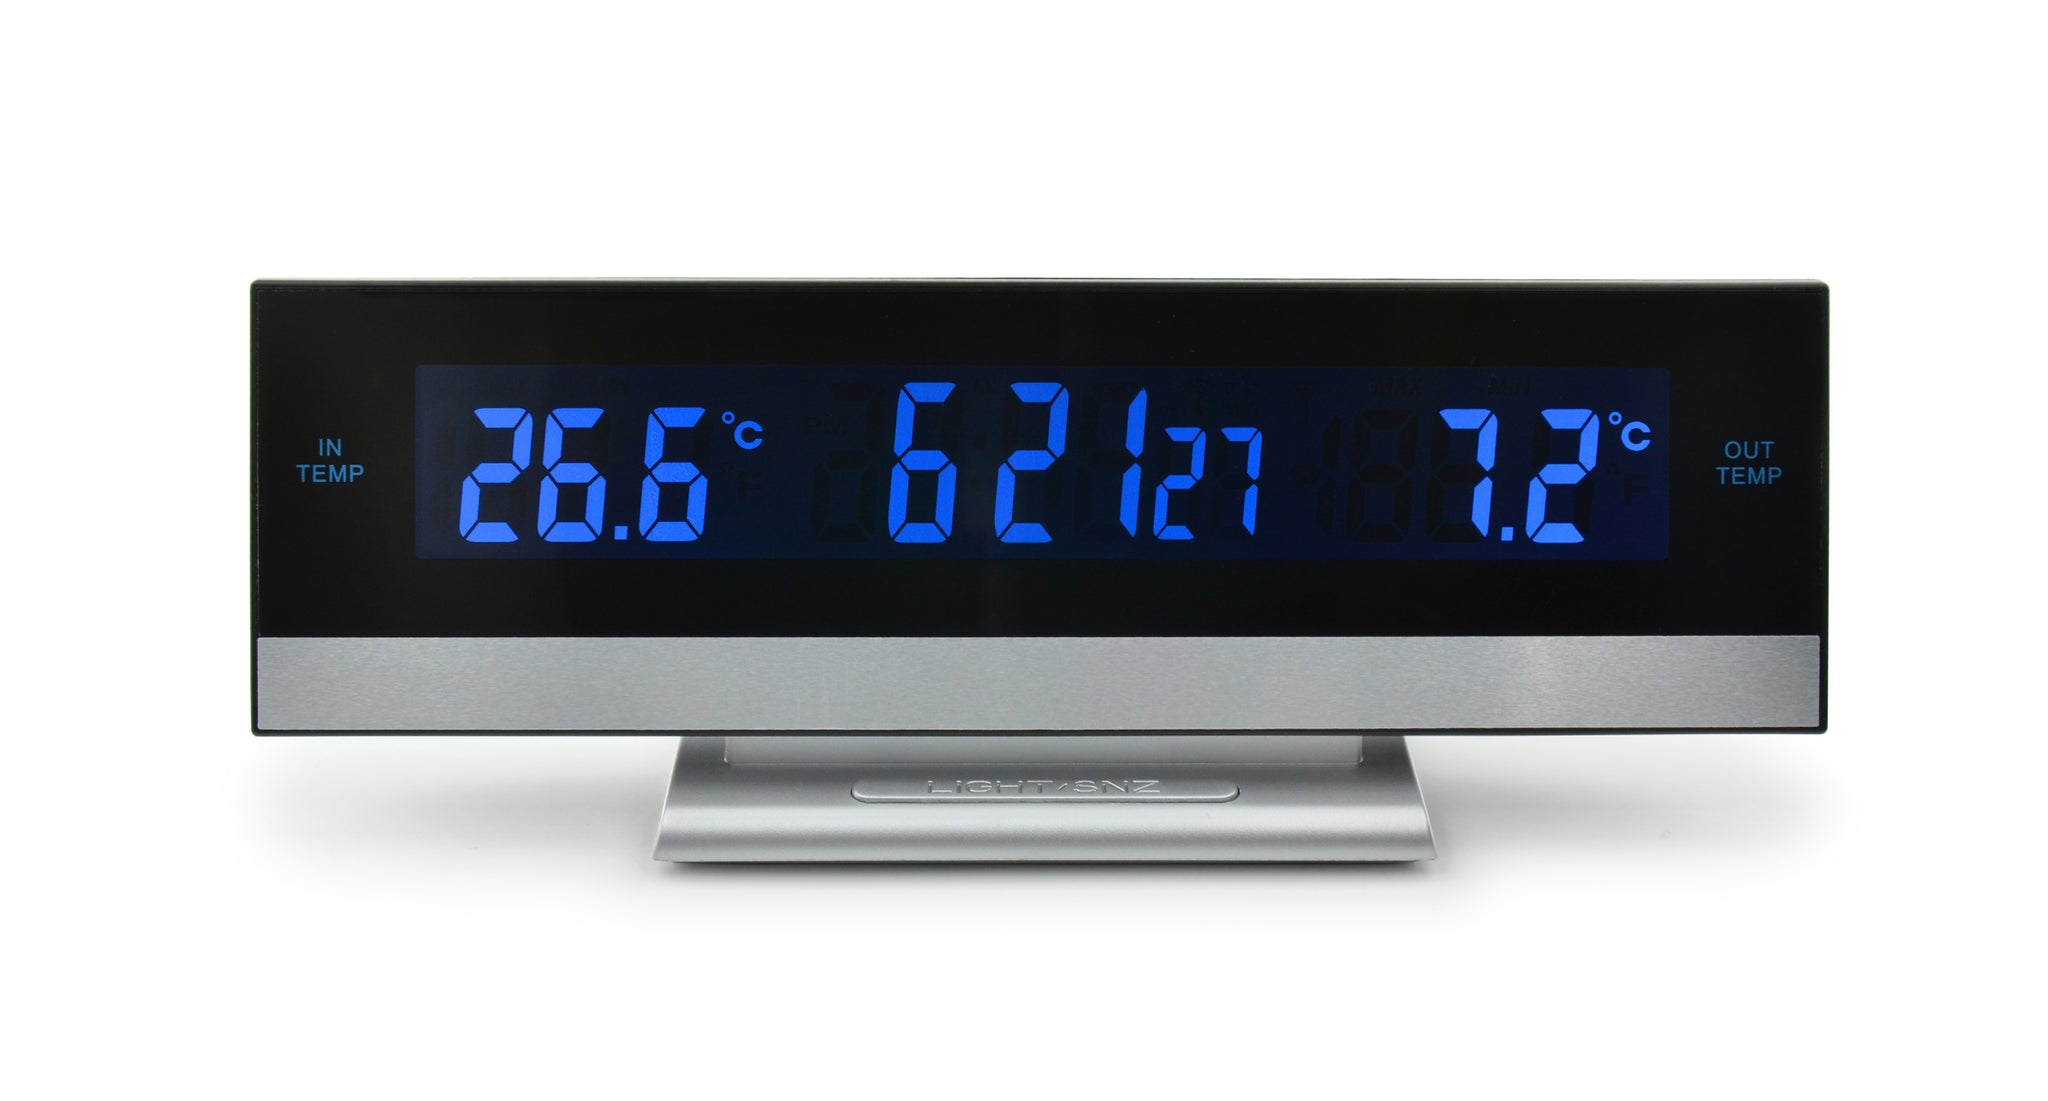 Thermomètre numérique d'intérieur/ d'extérieur avec alarme – BIOS Medical